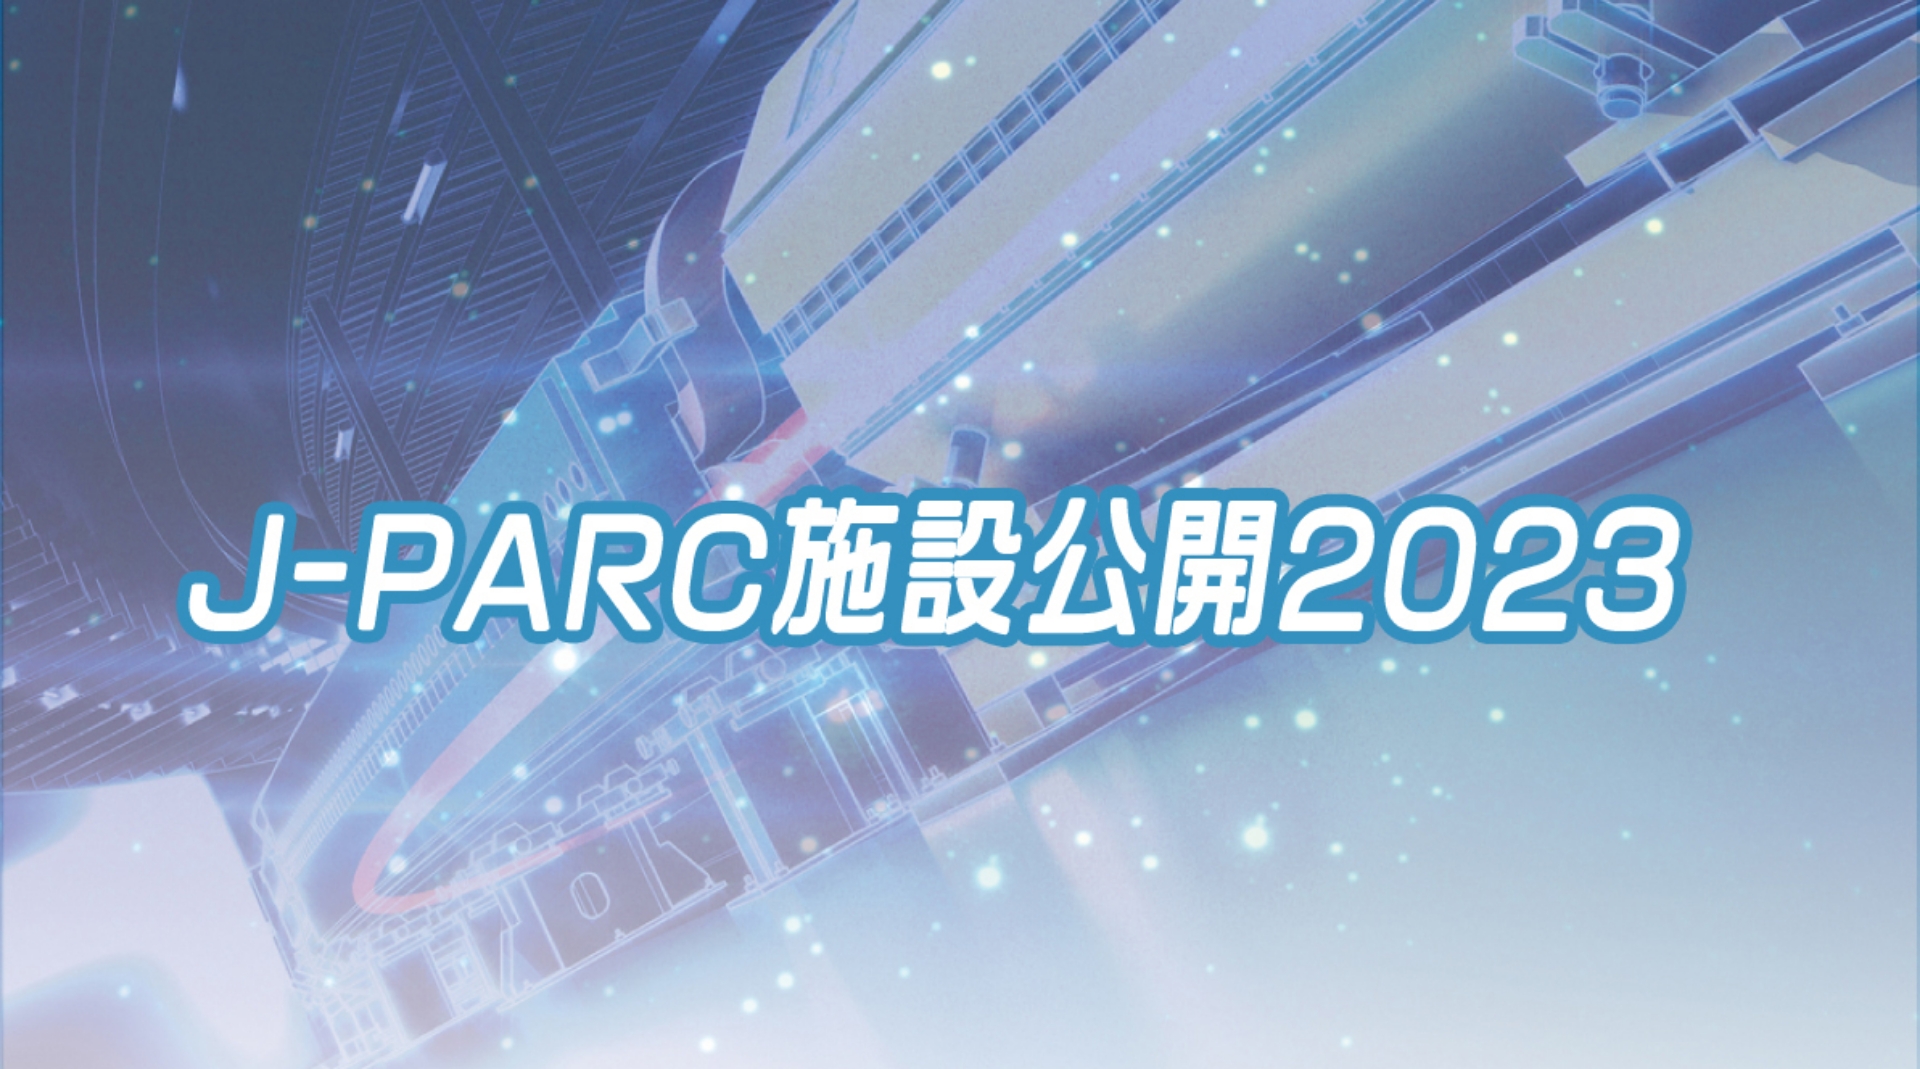 J-PARC オンライン施設公開2023